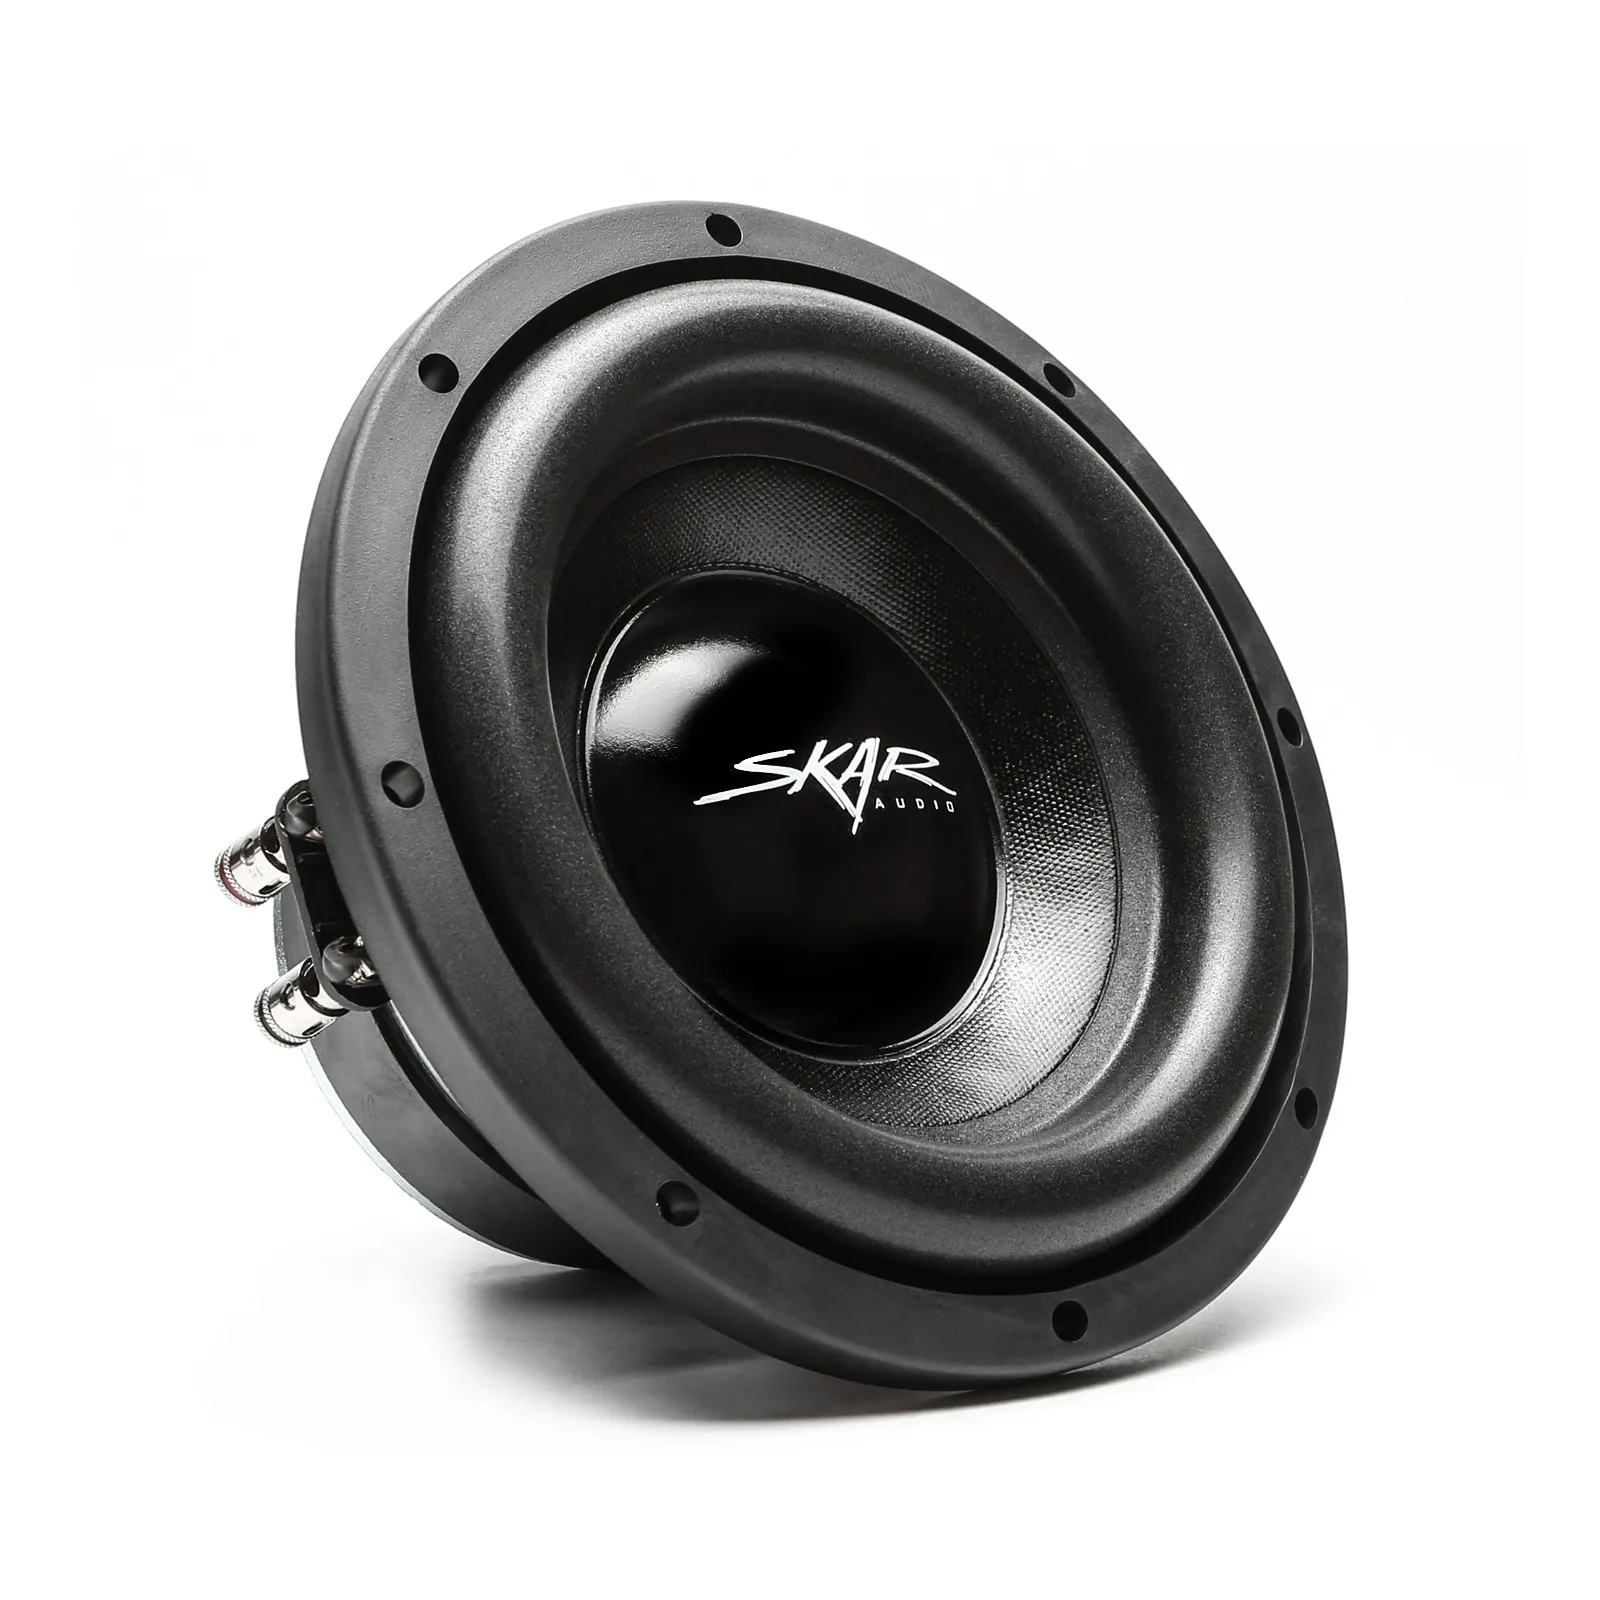 Skar Audio Ix-8 D2 Dual 2 300W Max Power Car Subwoofer